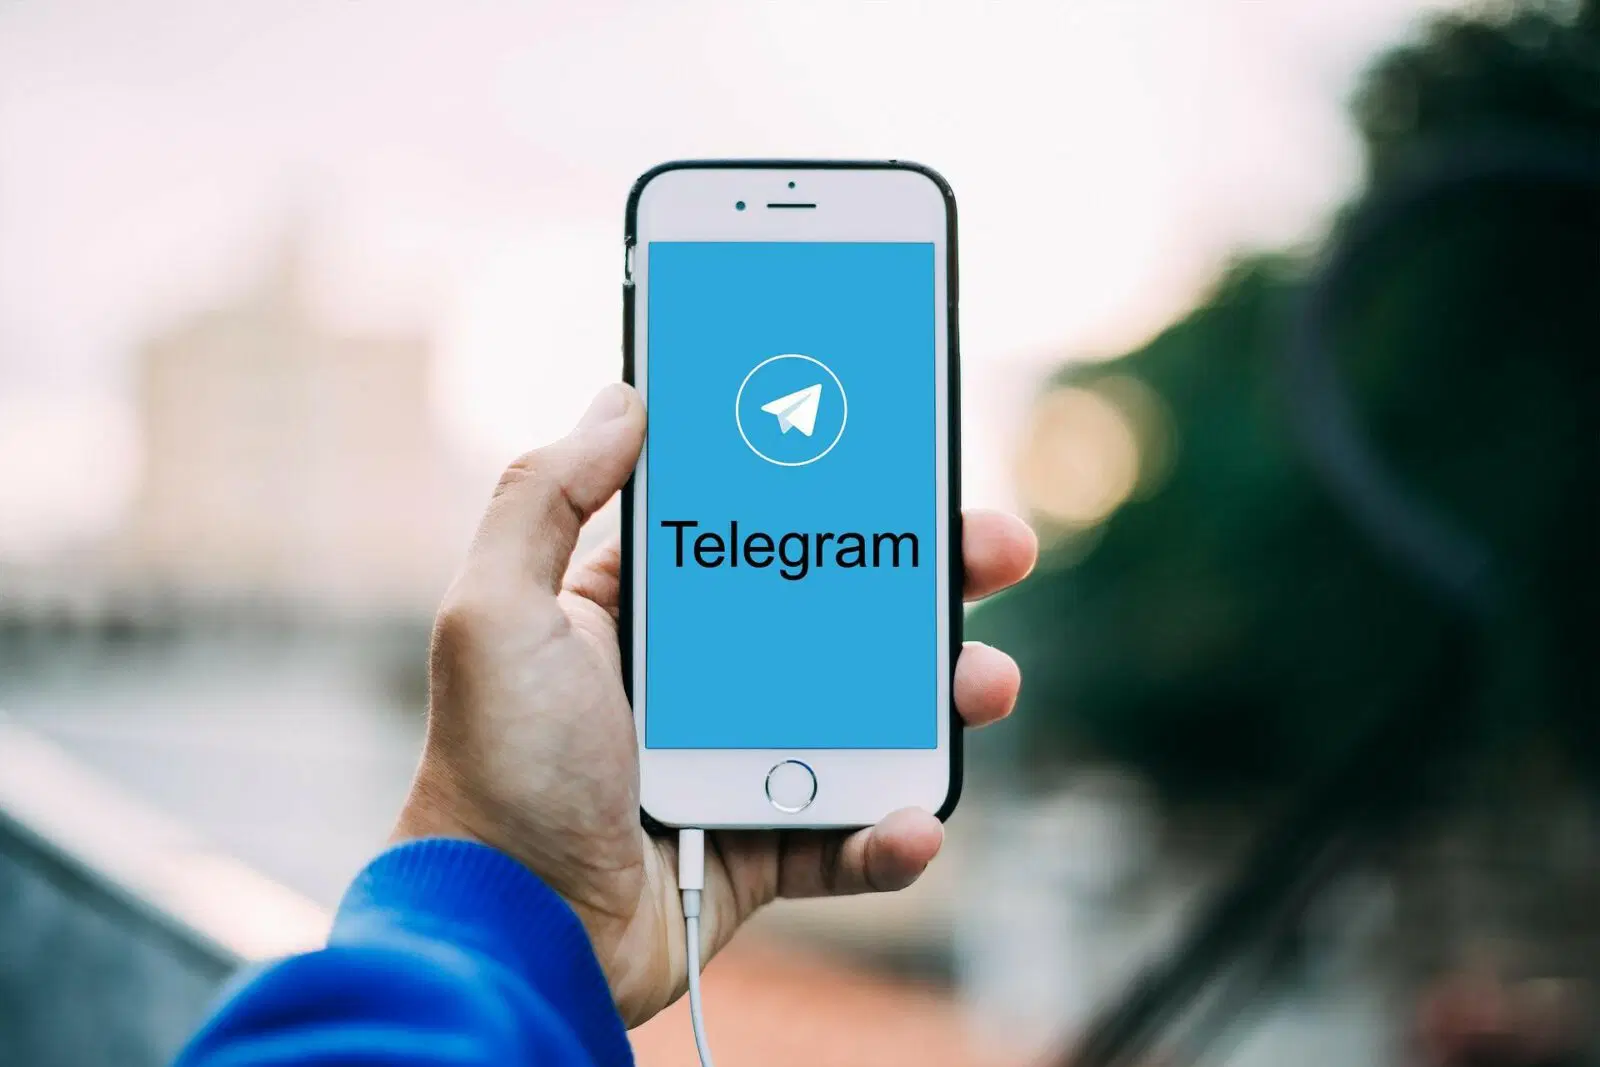 Desbloquear um grupo de telegramas no Iphone (IOS)